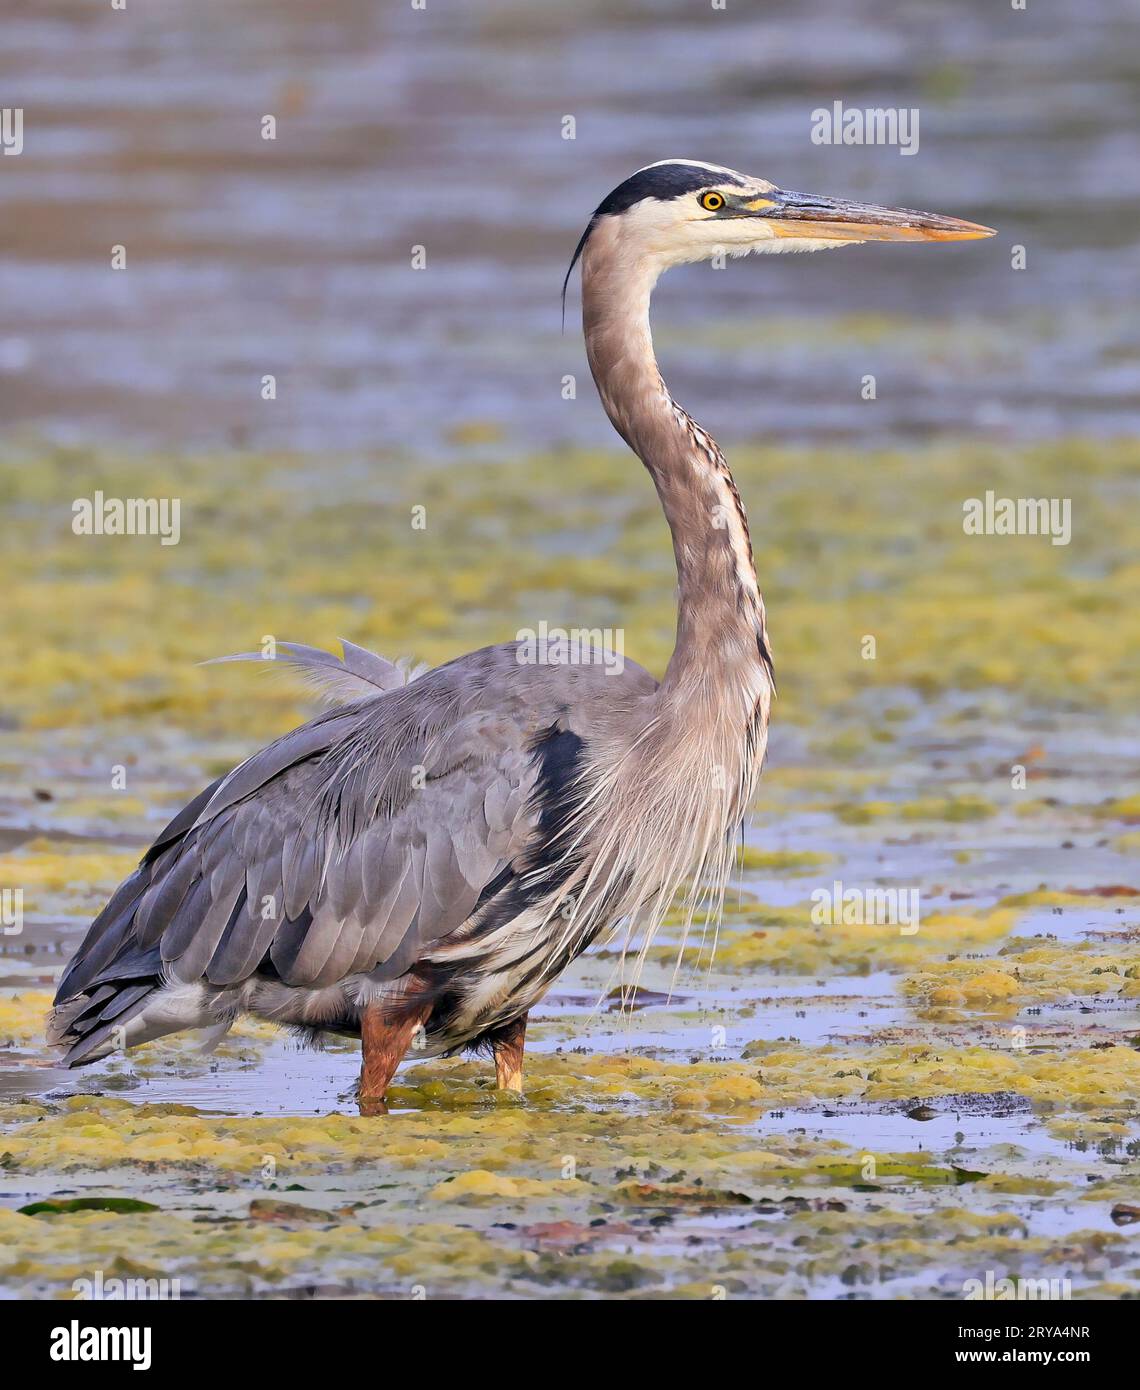 Ritratto di Great Blue Heron nella palude, Canada orientale Foto Stock